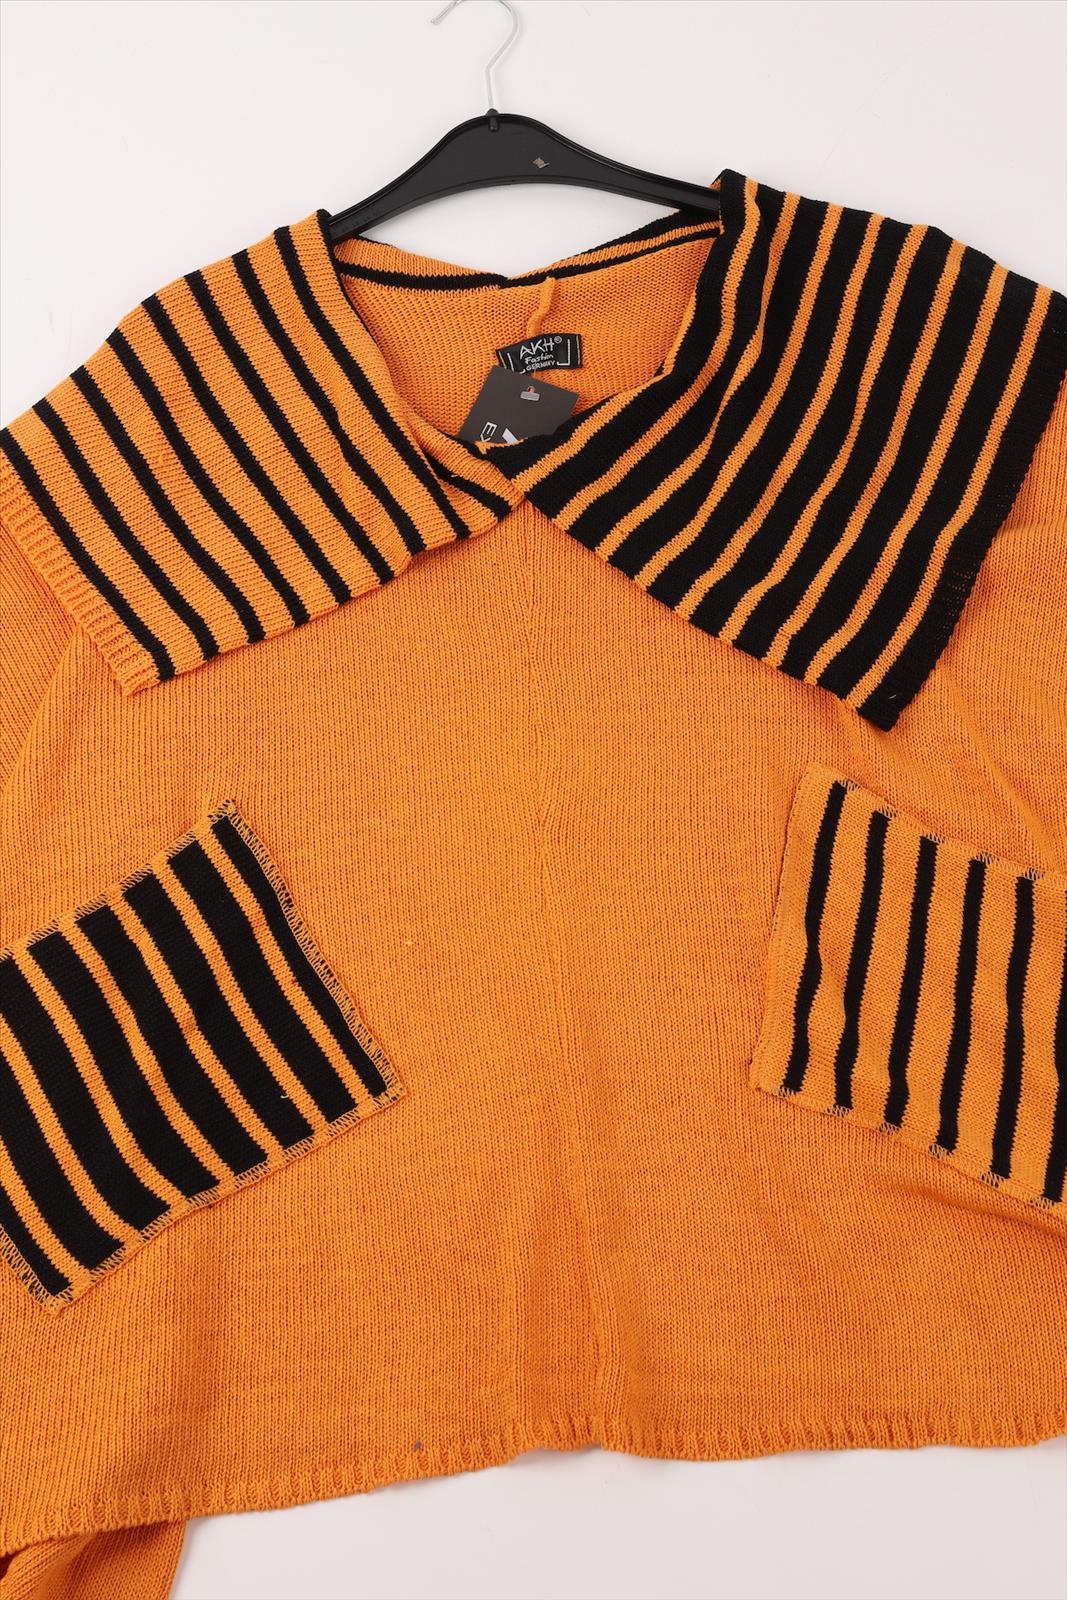 Übergangs Pullover in kastiger Form aus er Qualität, Orange-Schwarz Lagenlook Oversize Mode B2B Großhandel